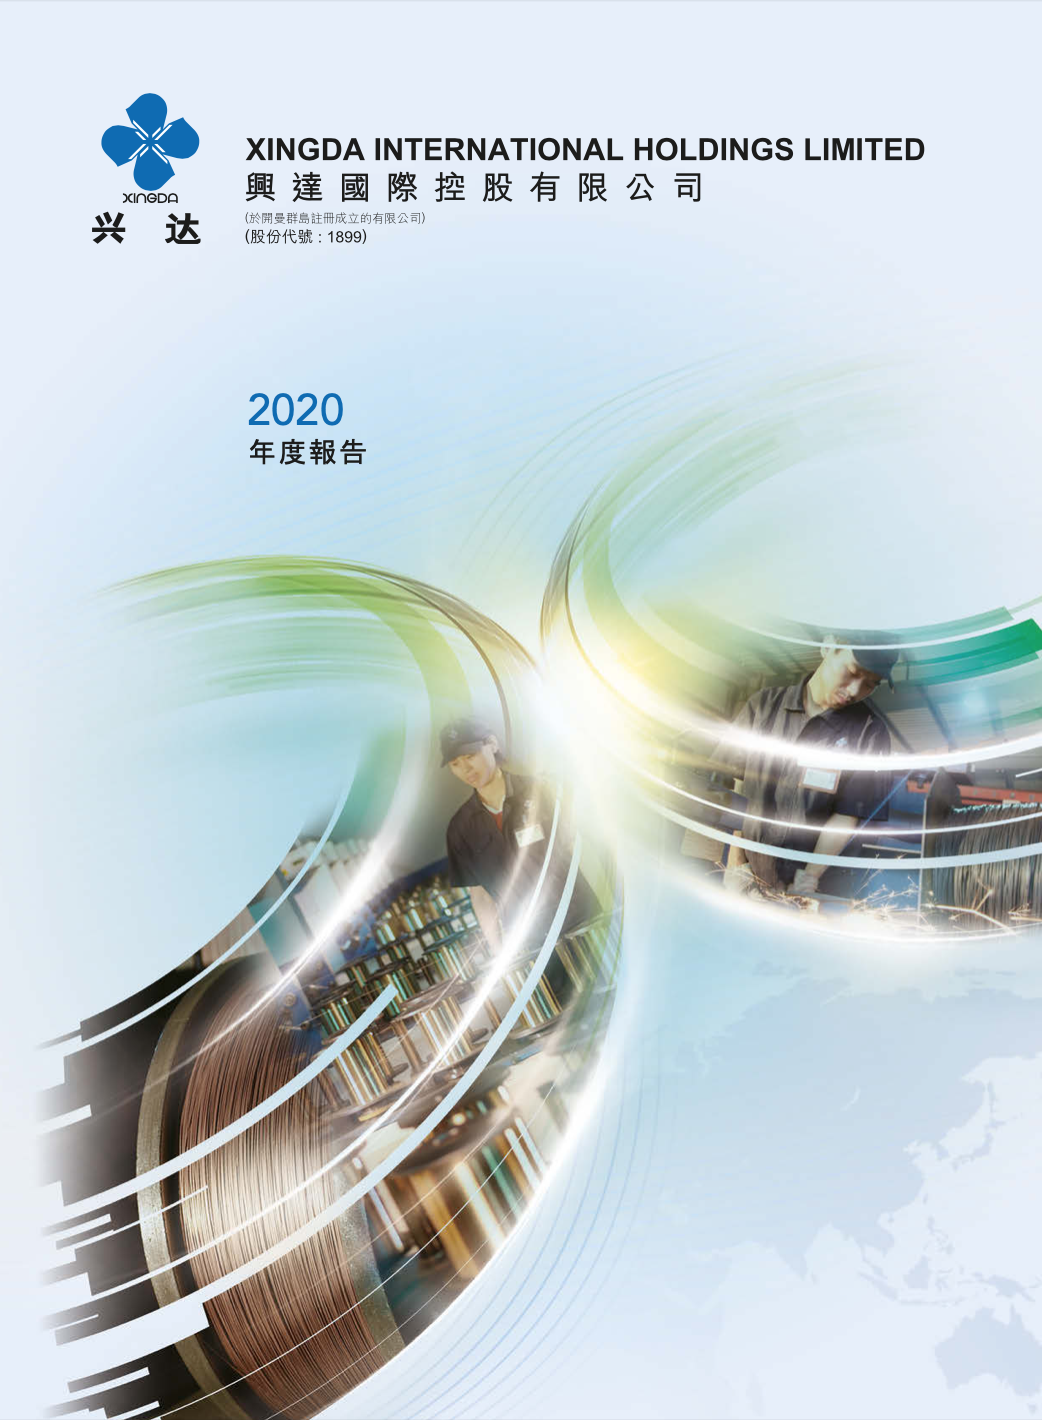 XINGDA Annual Report 2020